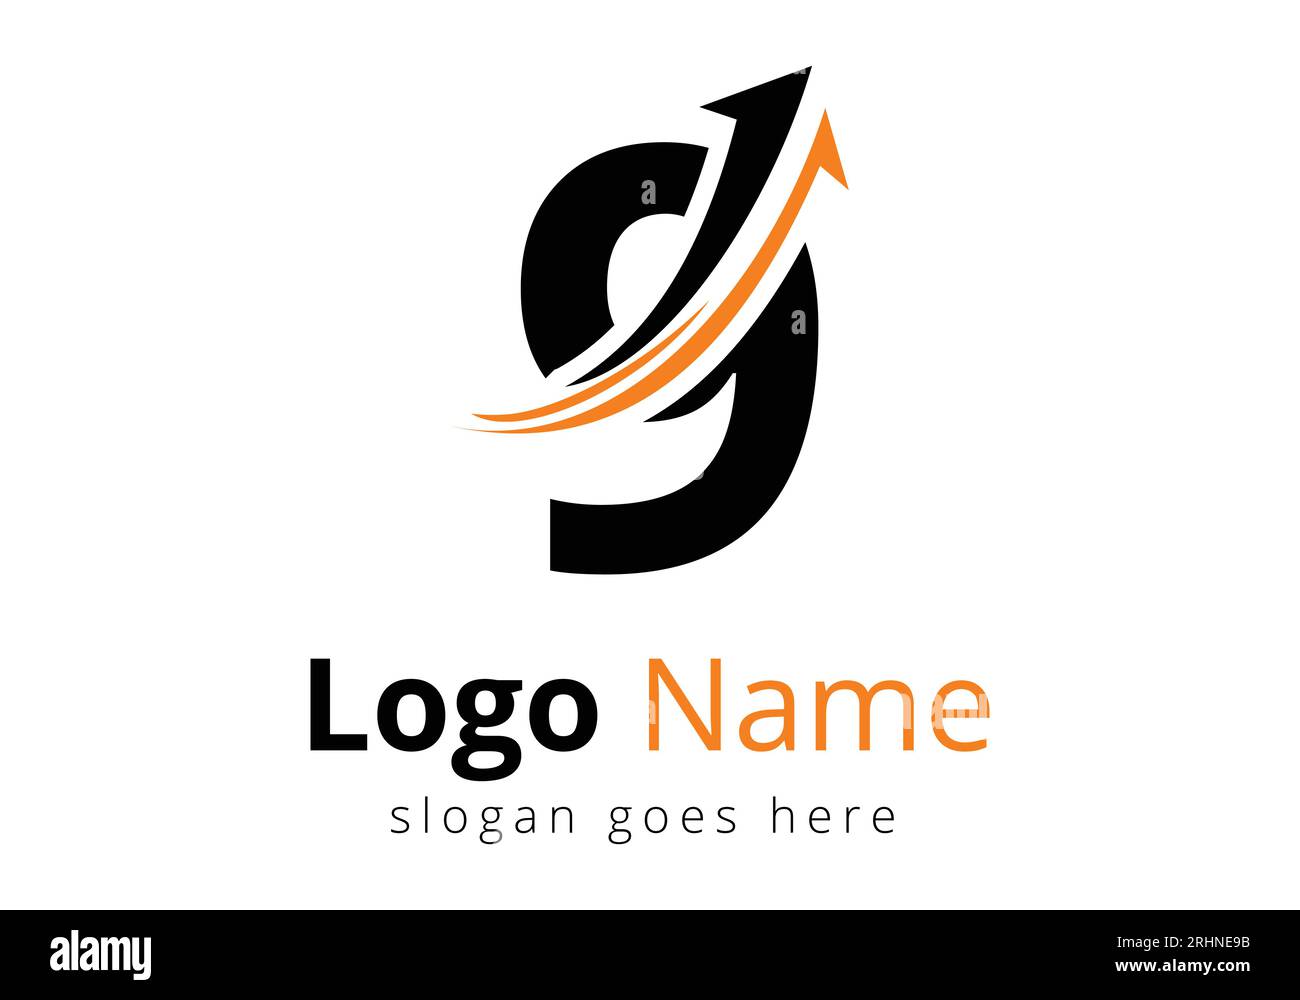 Logo de financement avec concept de 9 lettres. Concept de logo financier ou de réussite. Logo pour l'entreprise comptable et l'identité de l'entreprise Illustration de Vecteur